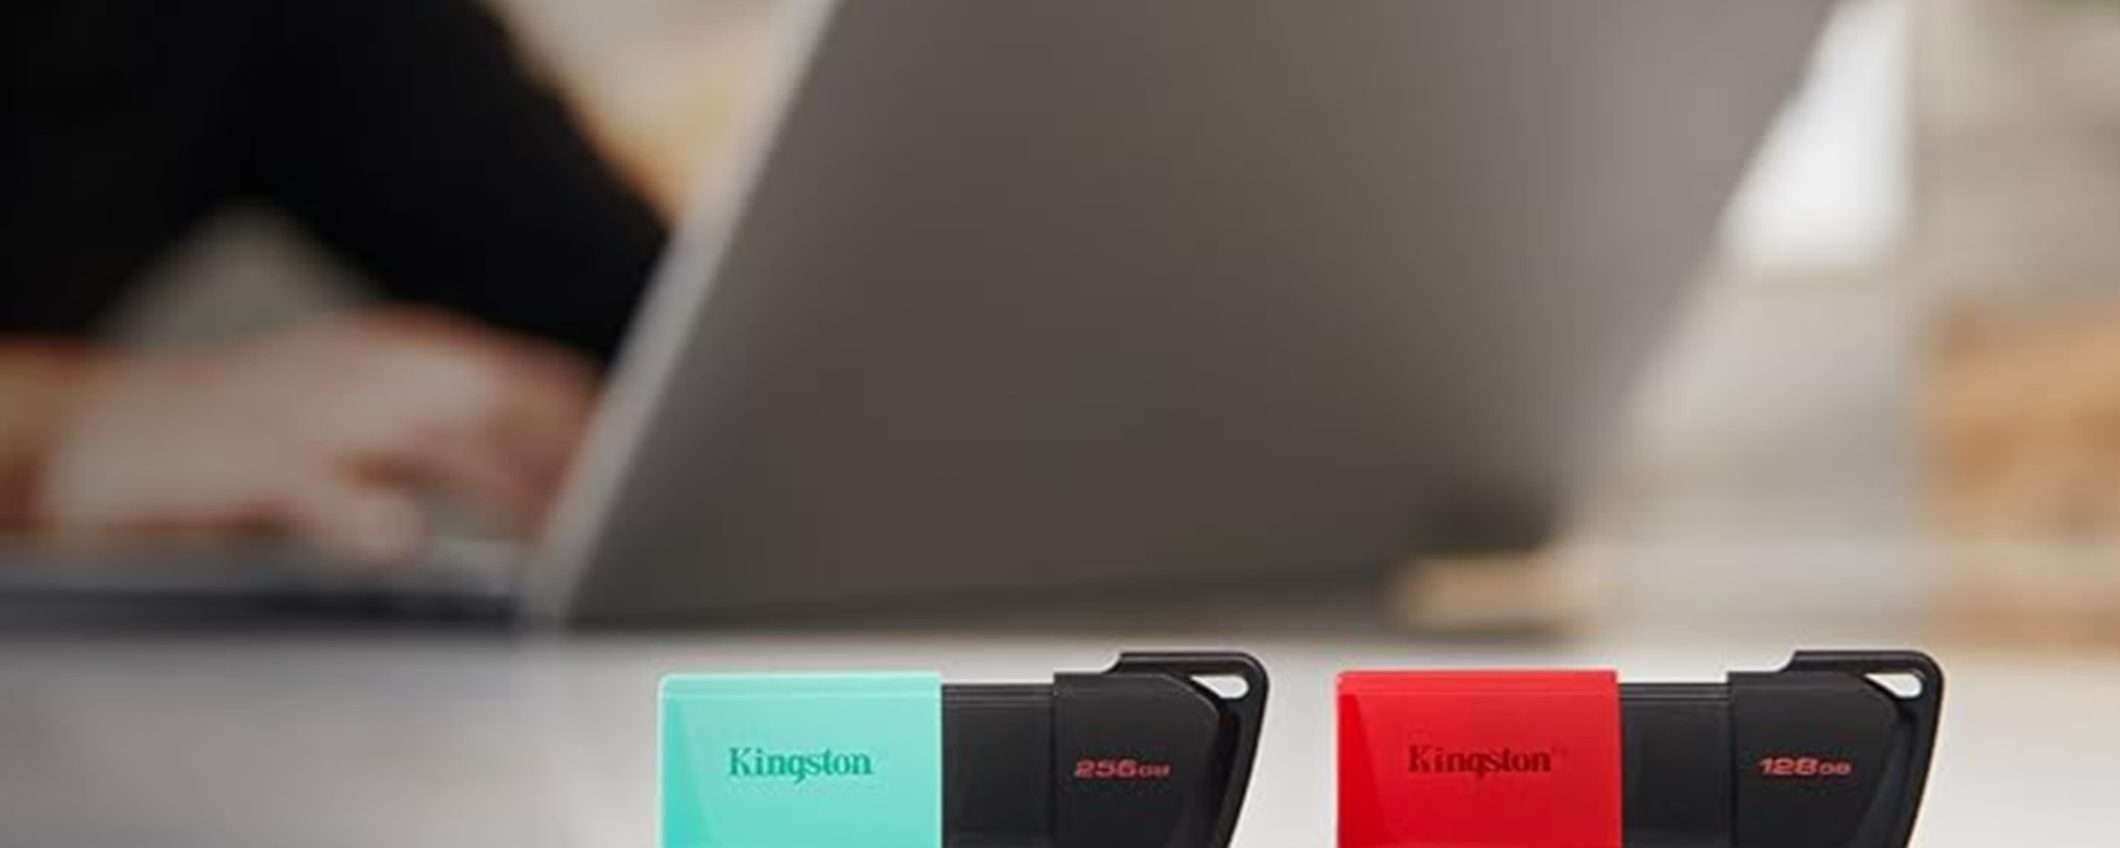 PenDrive USB 128GB Kingston in super offerta a 10,69€ su Amazon